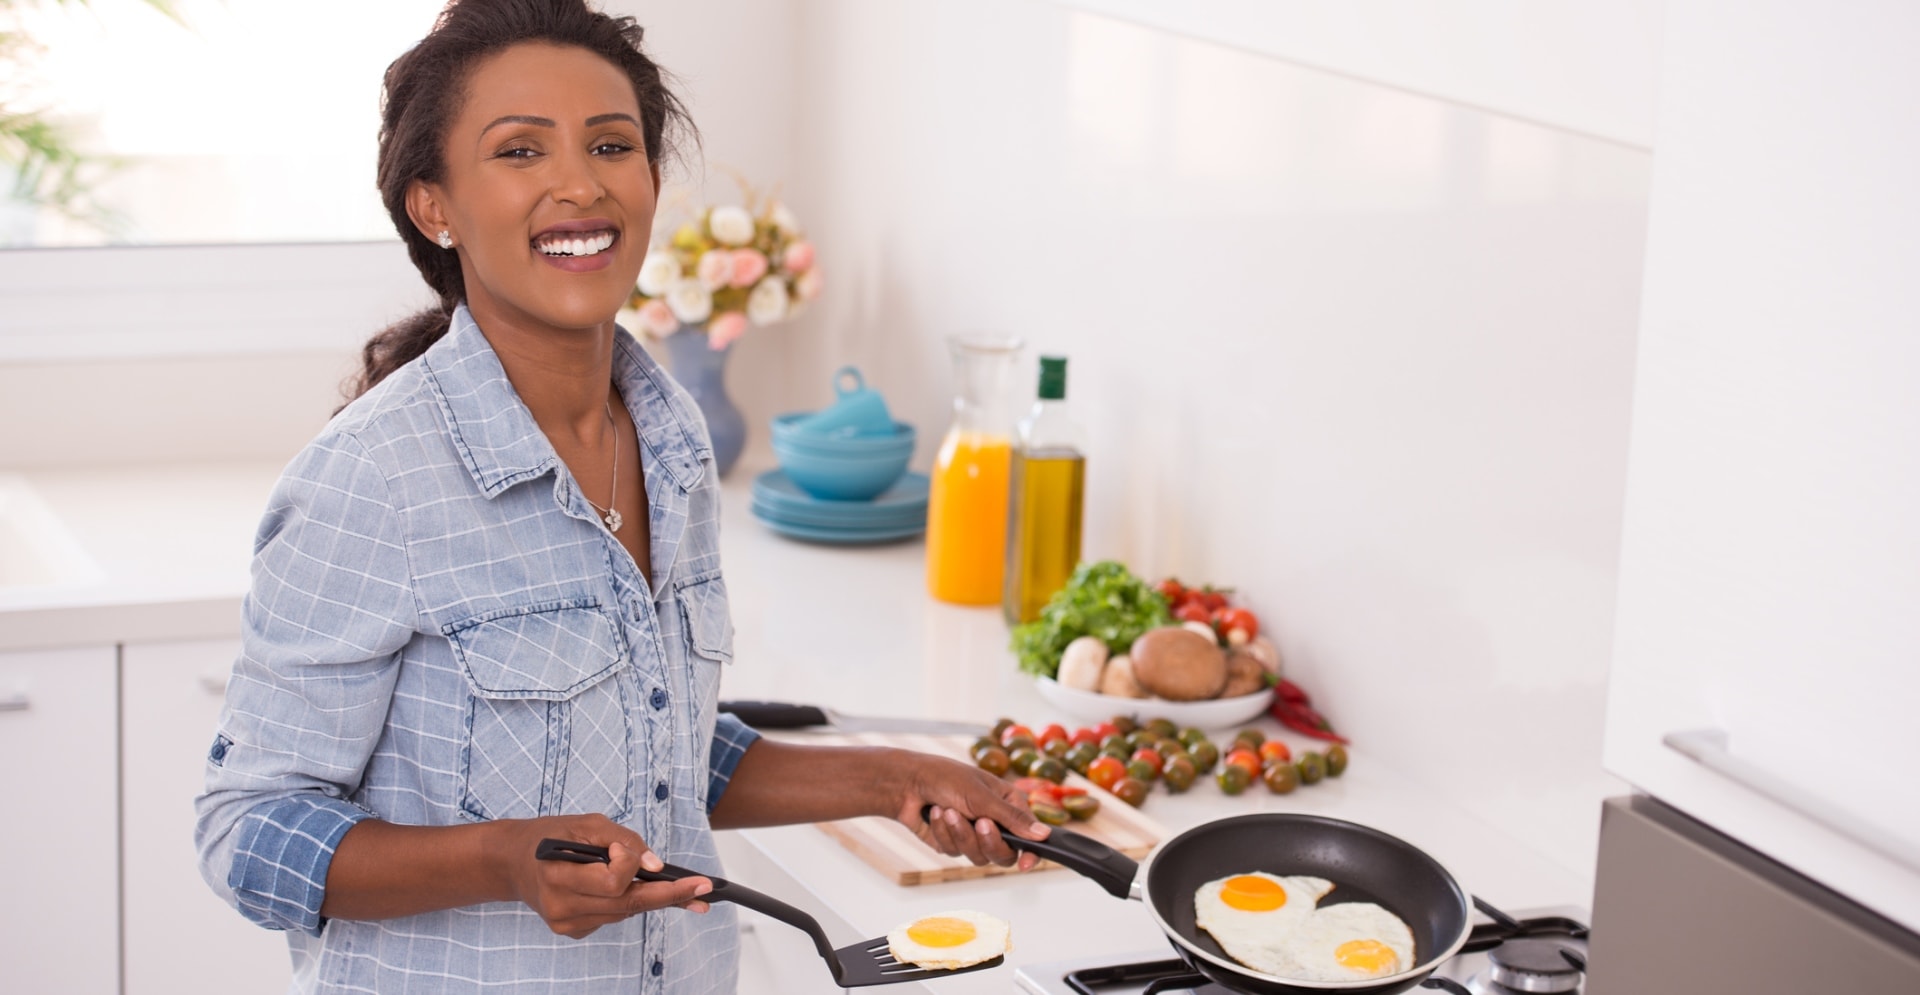 Vrouw die gebakken eieren in een pan maakt die mogelijk PFAS-houdend is.